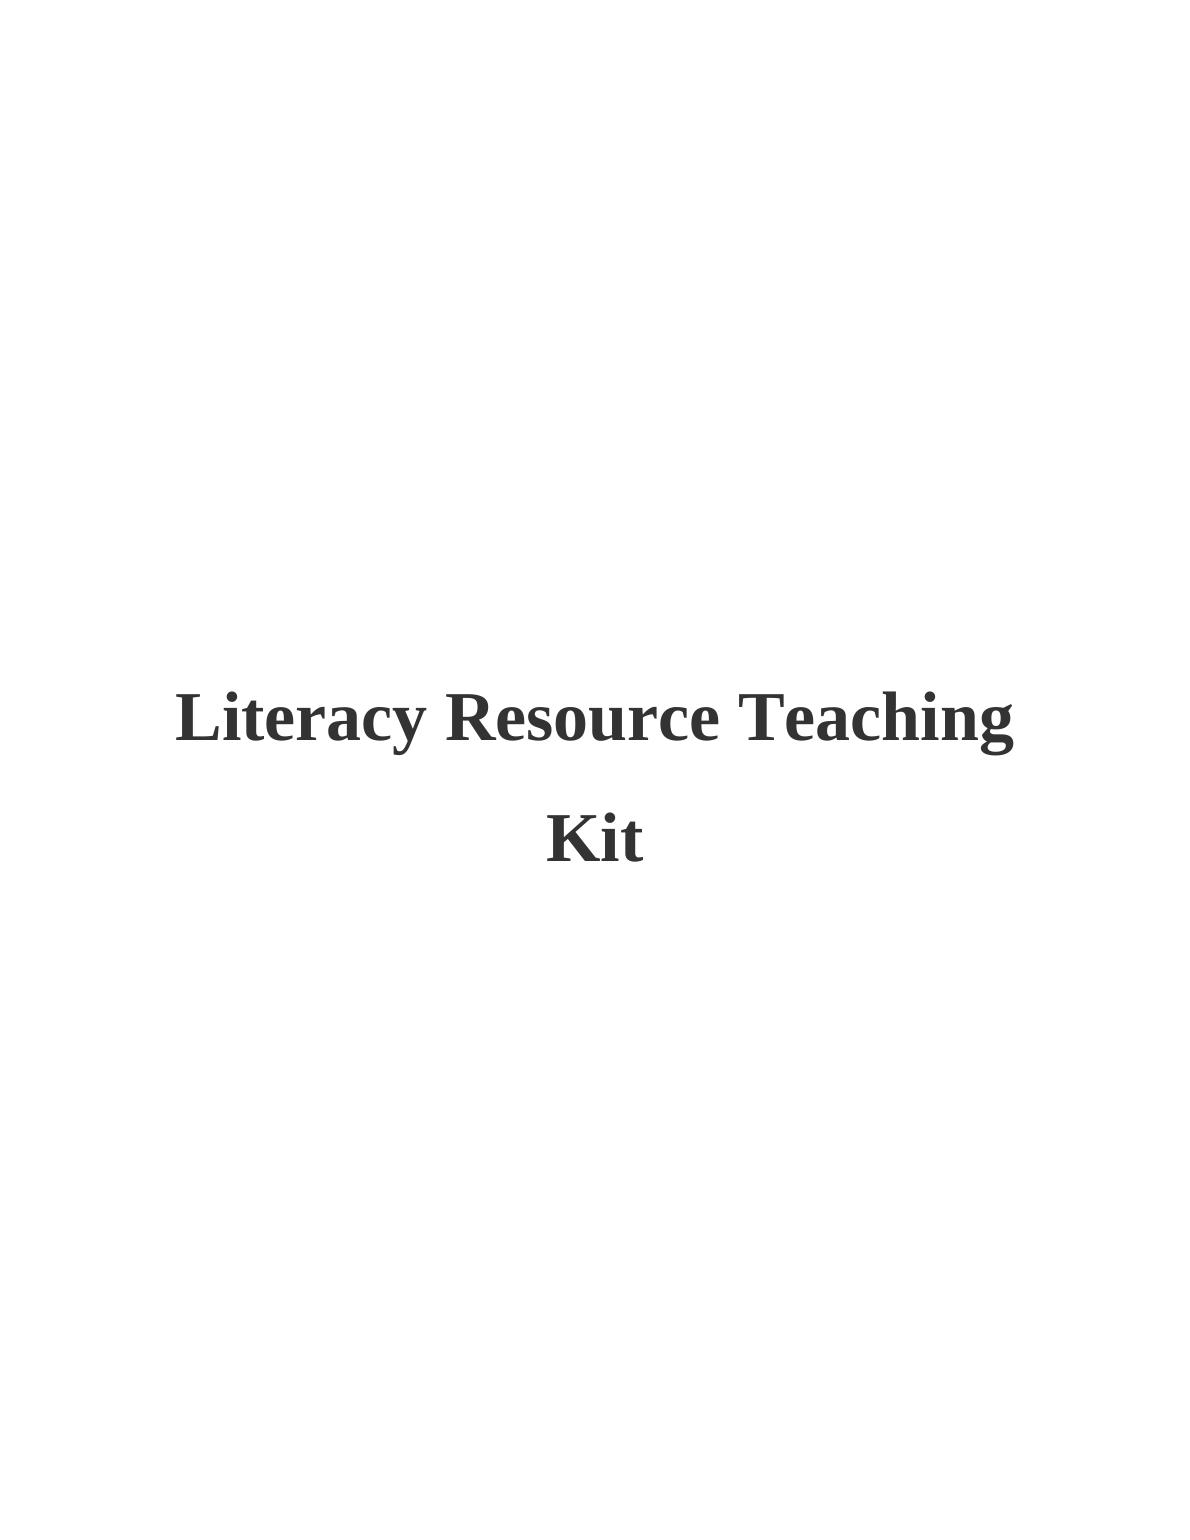 Literacy Resource Teaching Kit_1